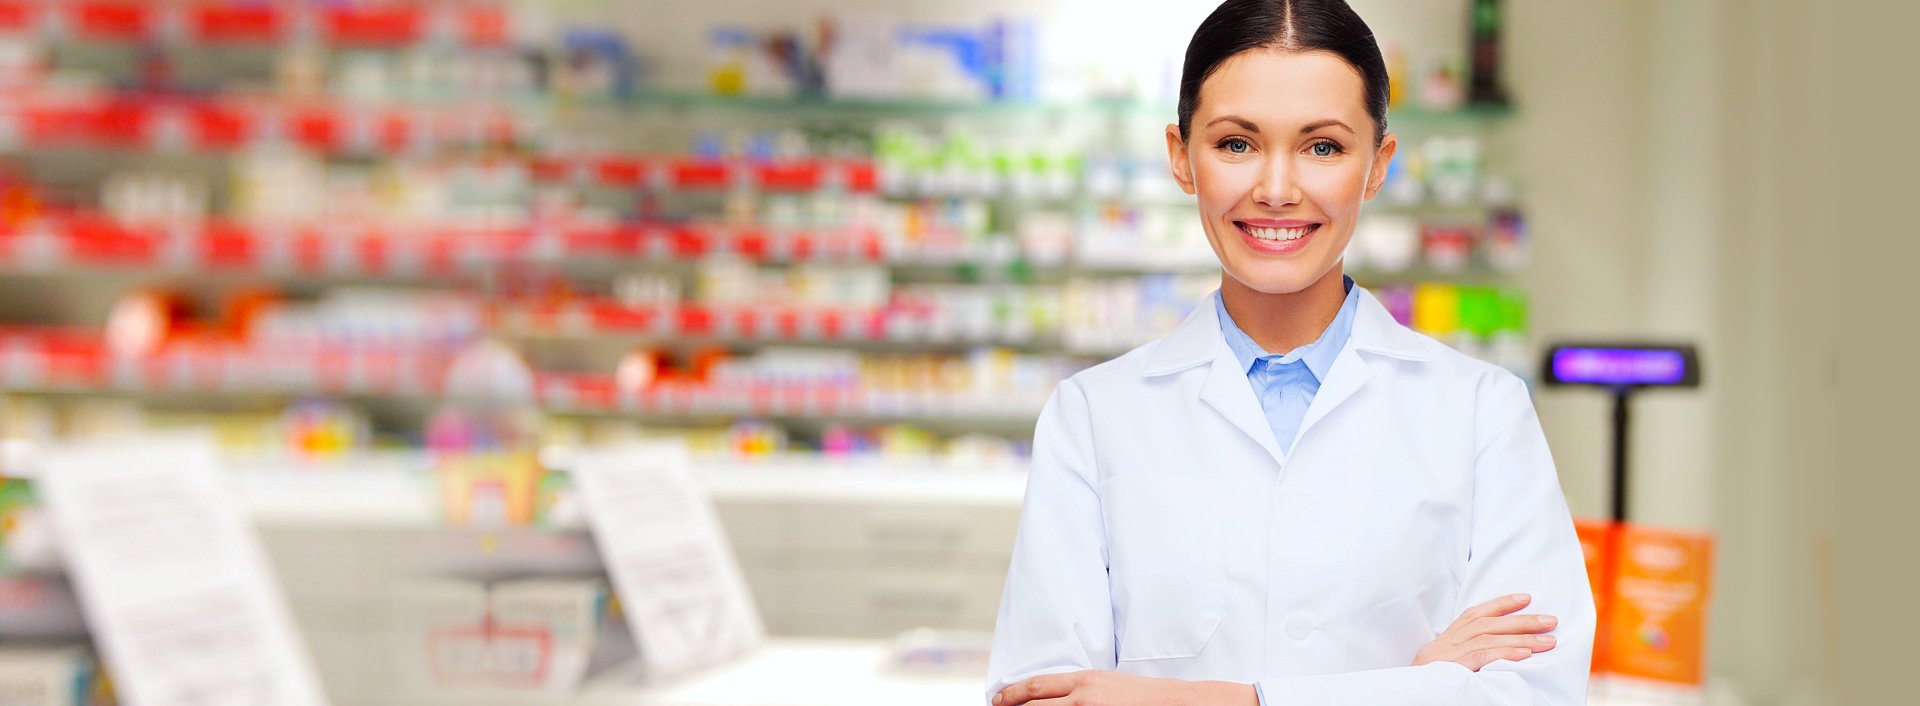 pharmacist smiling inside the drug store